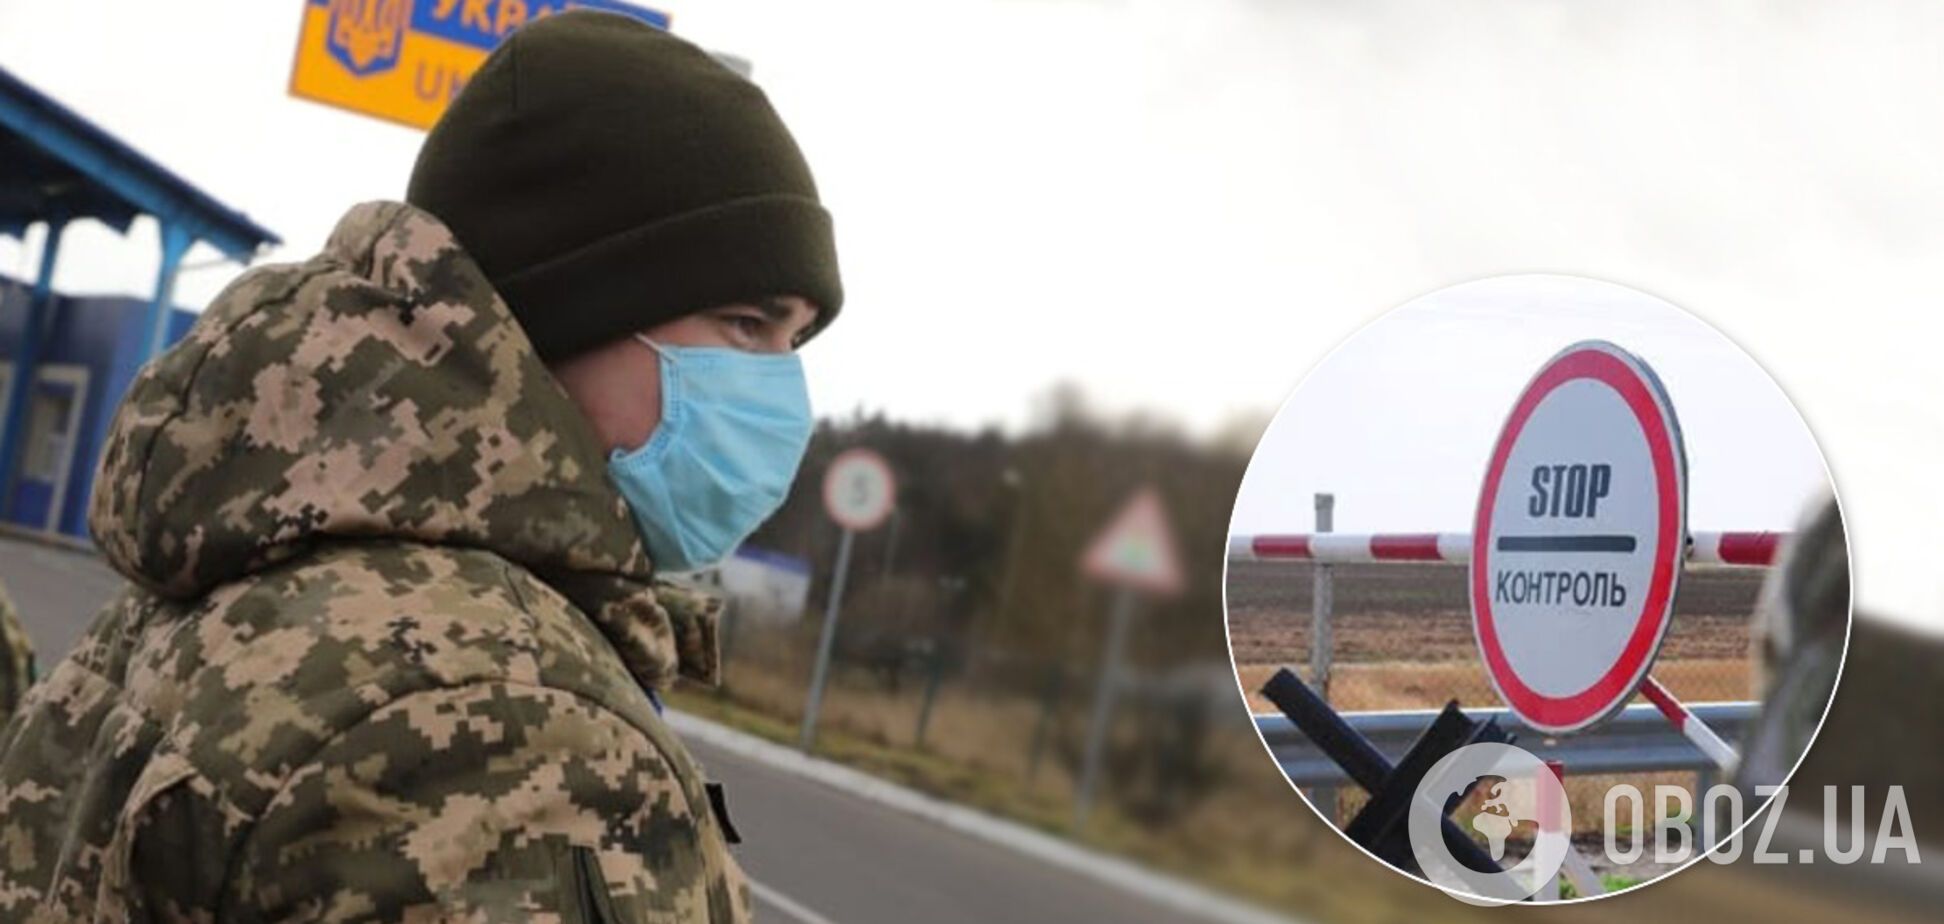 Як Україна відкриватиме кордони після карантину: в МЗС дали пояснення